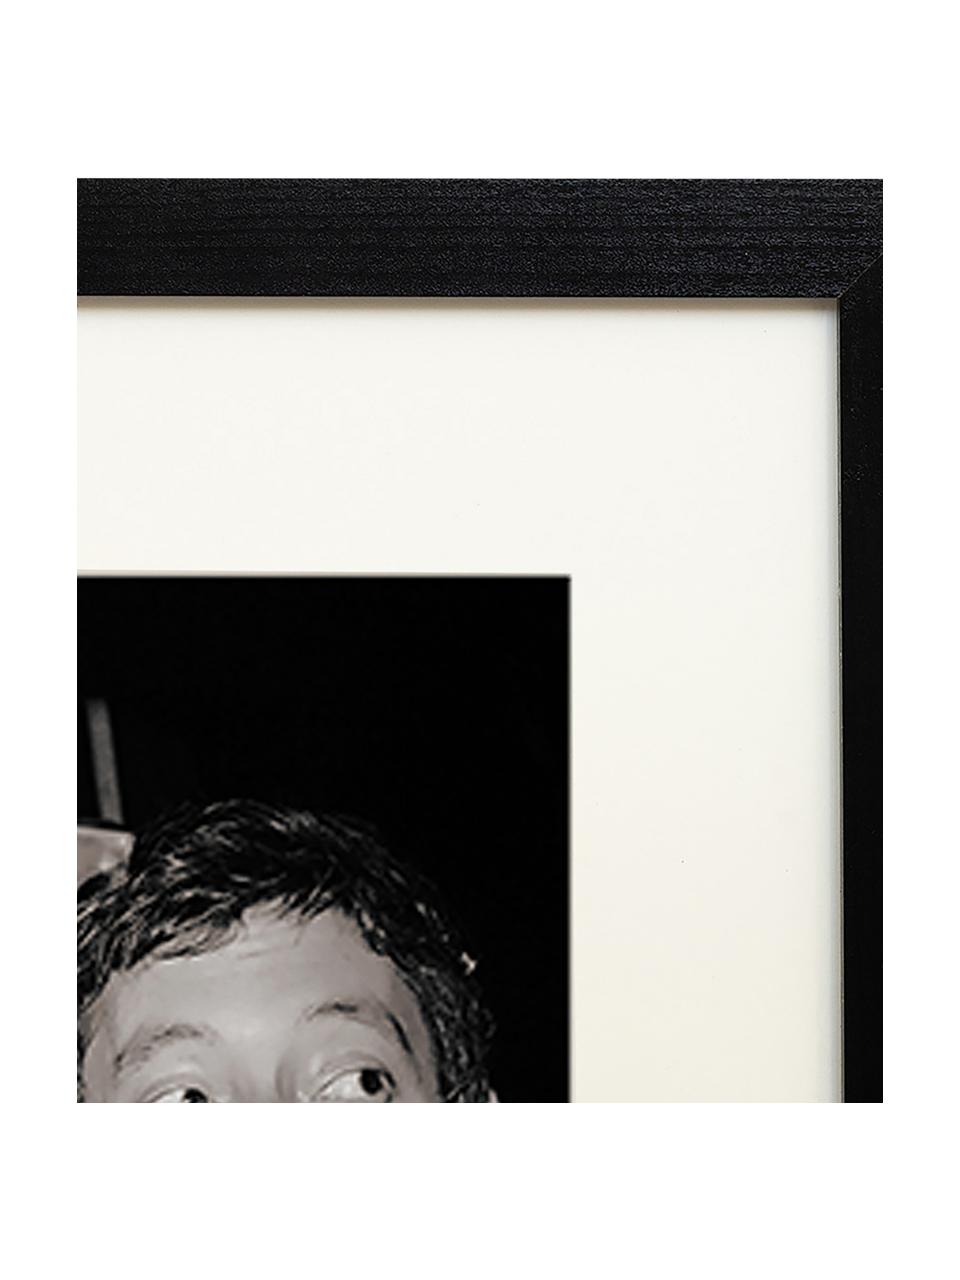 Gerahmte Fotografie Serge Gainsbourg & Jane Birkin, Rahmen: Buchenholz, Bild: Digitaldruck auf Papier, , Front: Acrylglas Dieses Produkt , Schwarz, Off White, B 33 x H 43 cm